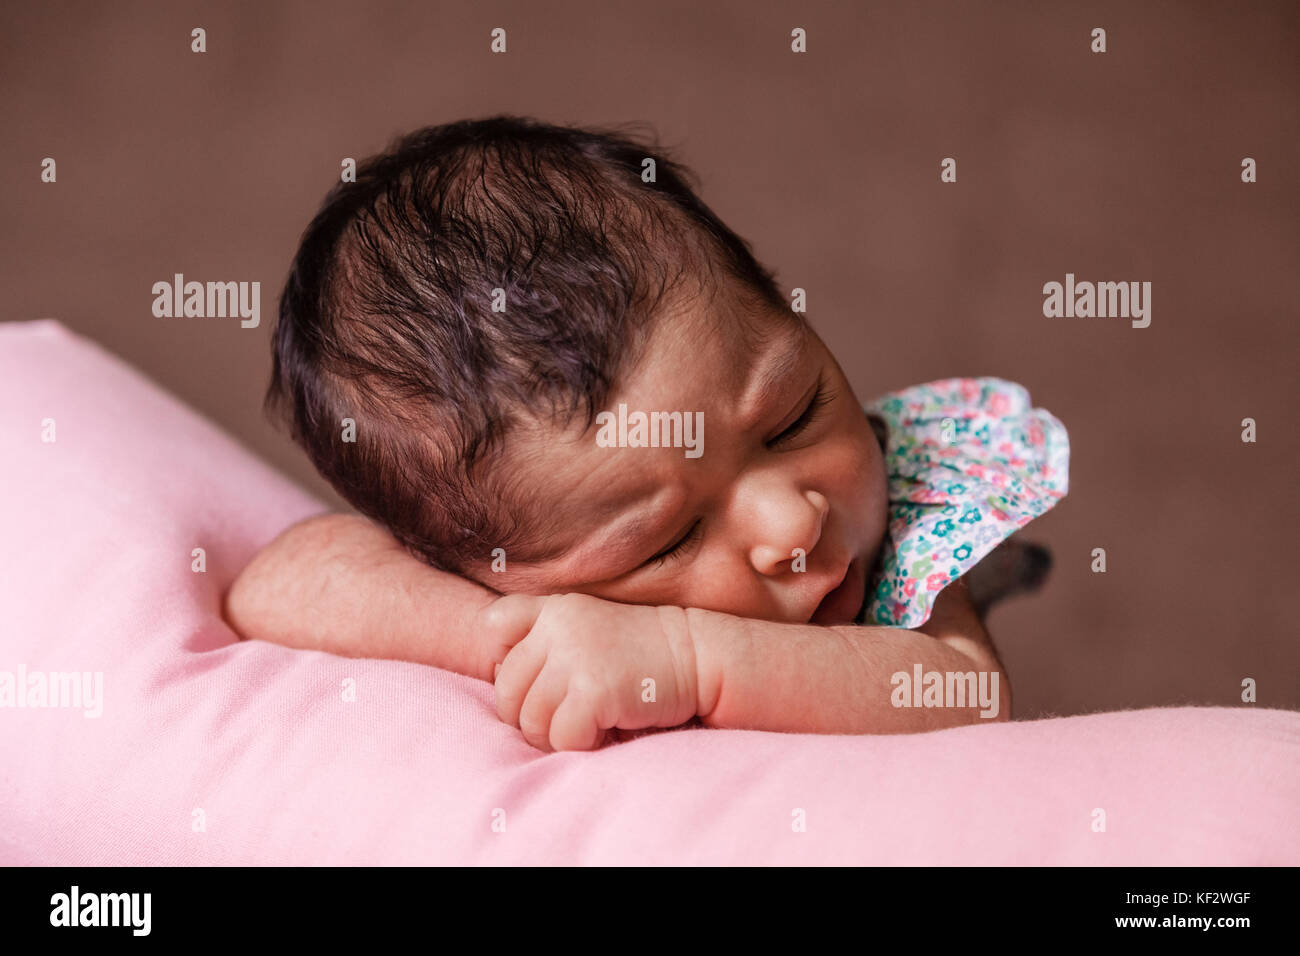 Close up portrait of a cute deux semaines Naissance bebe Fille portant une robe à fleurs, dormir paisiblement sur un oreiller / nouveau-né portrait mignon Banque D'Images